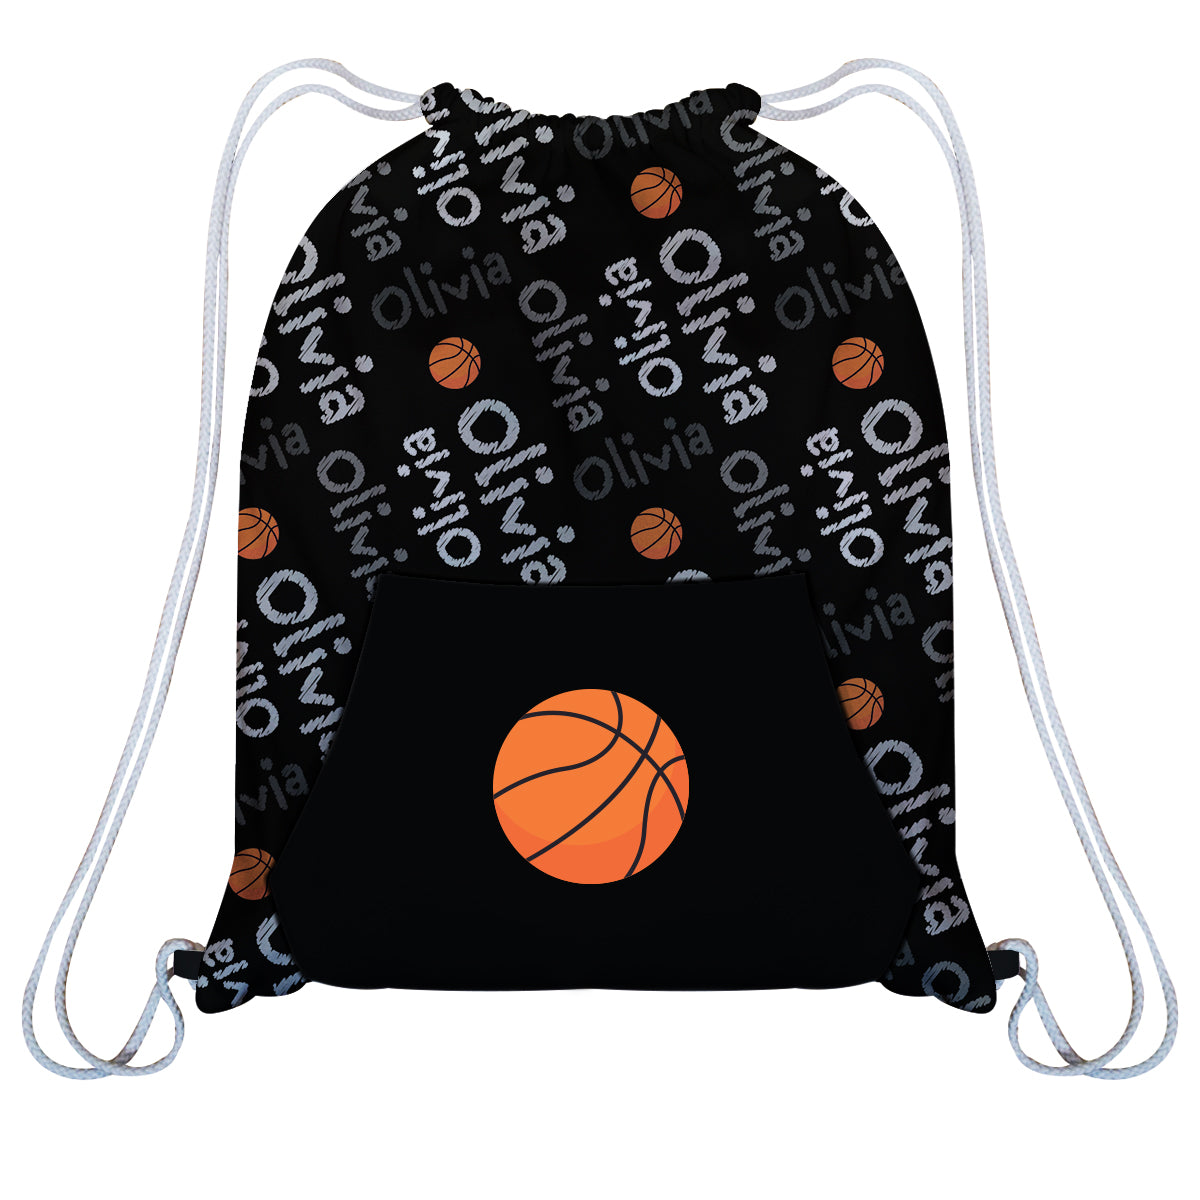 Basketball Name Black Fleece Gym Bag With Kangaroo Pocket - Wimziy&Co.